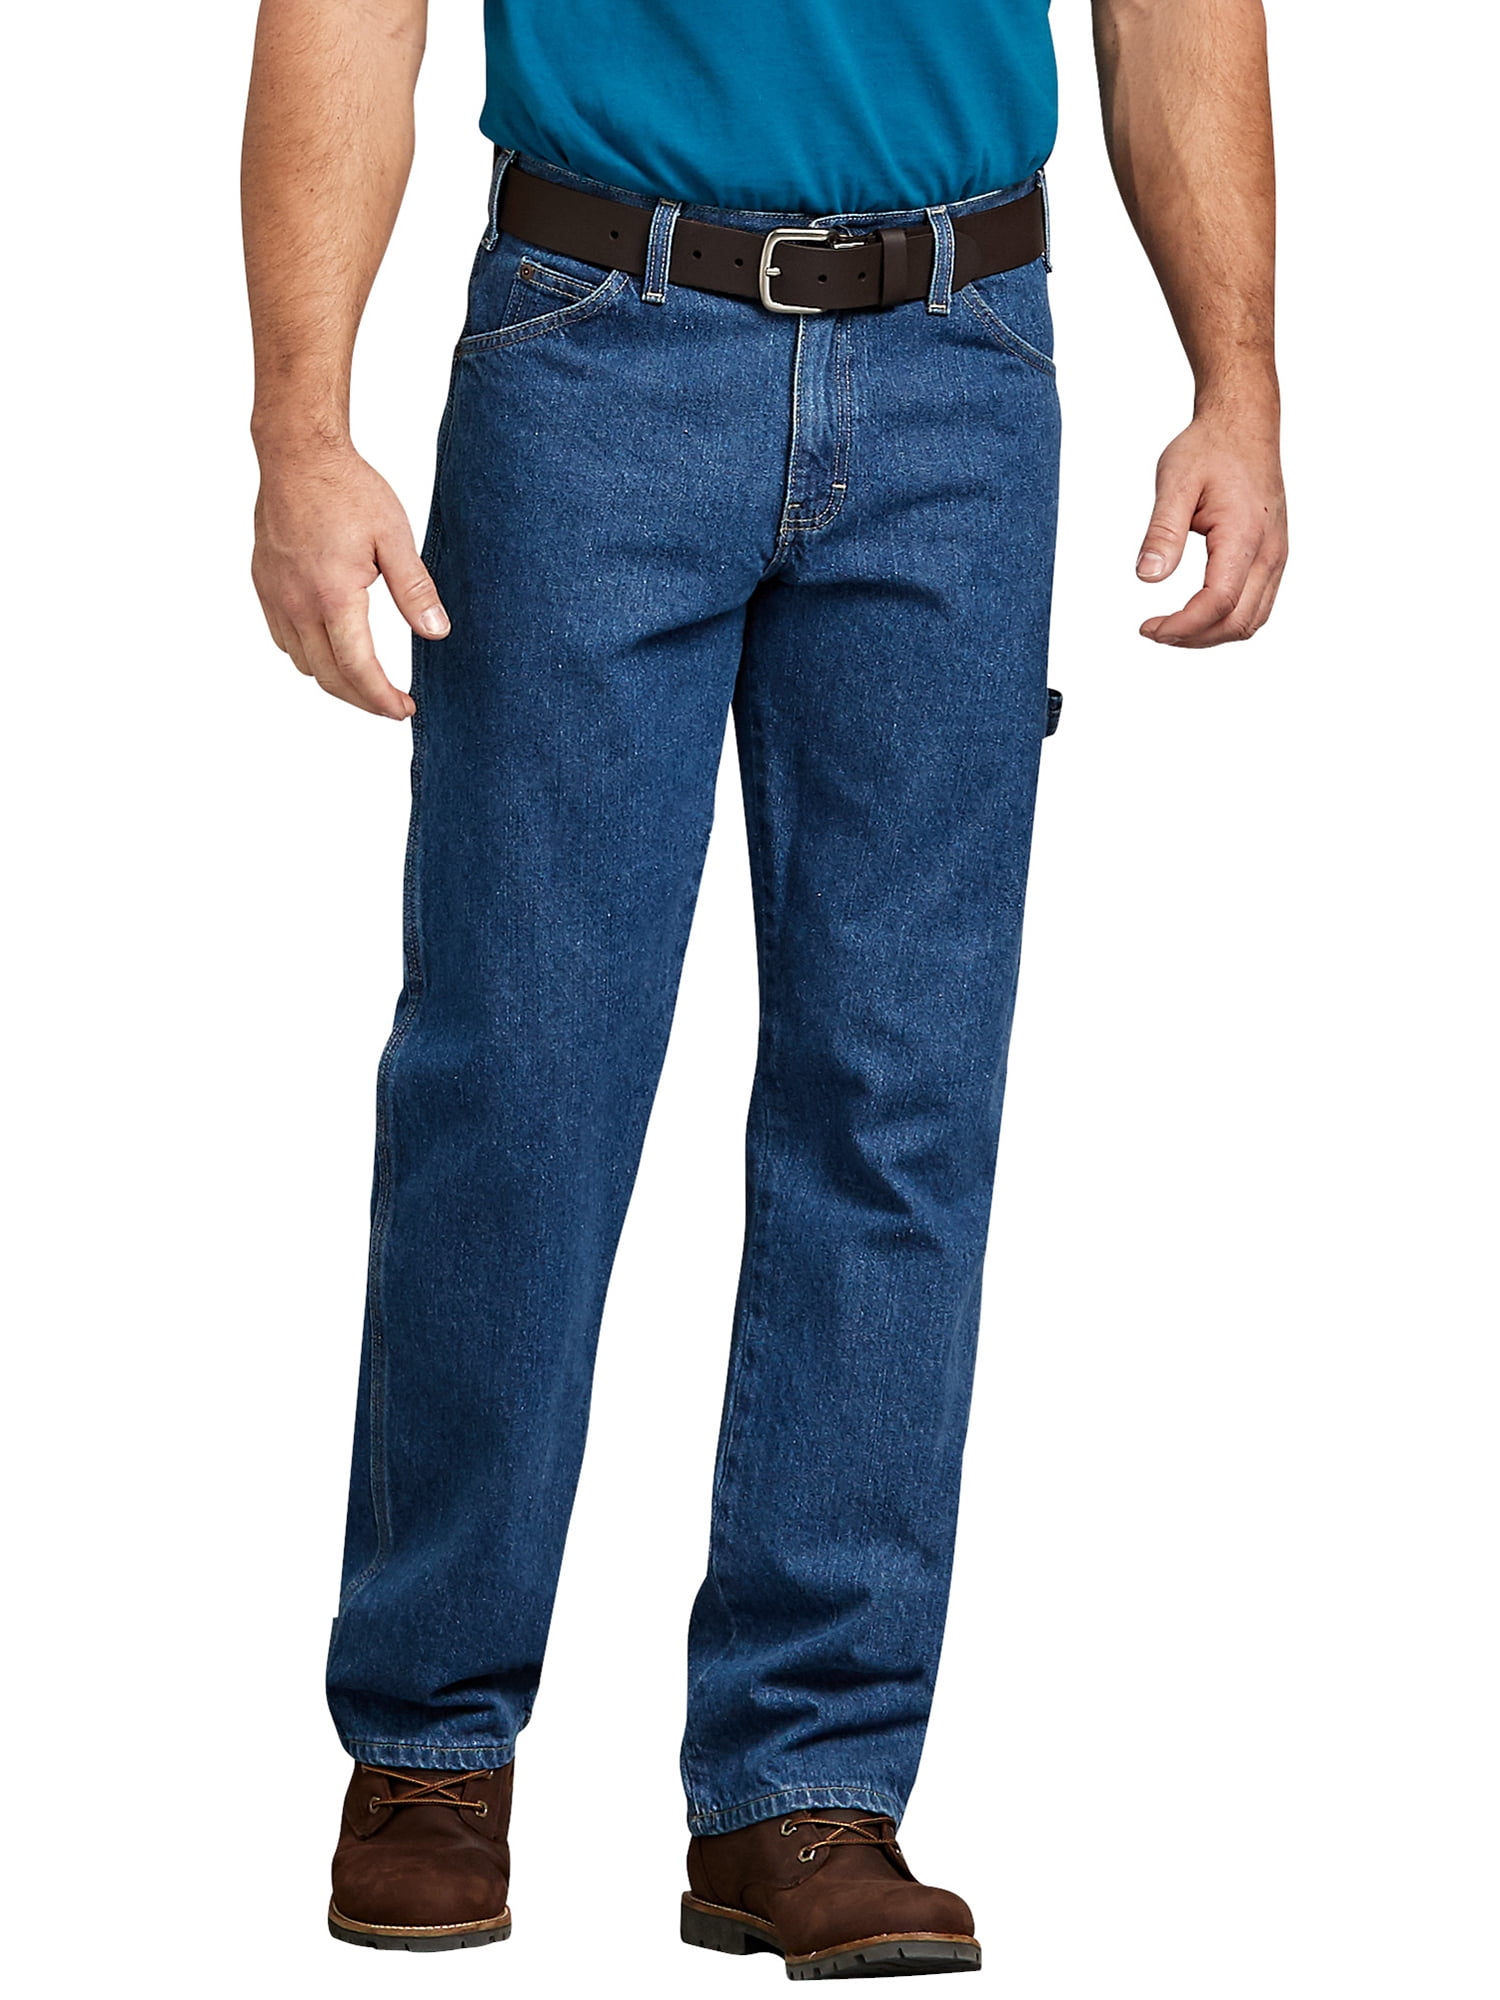 walmart dickies jeans